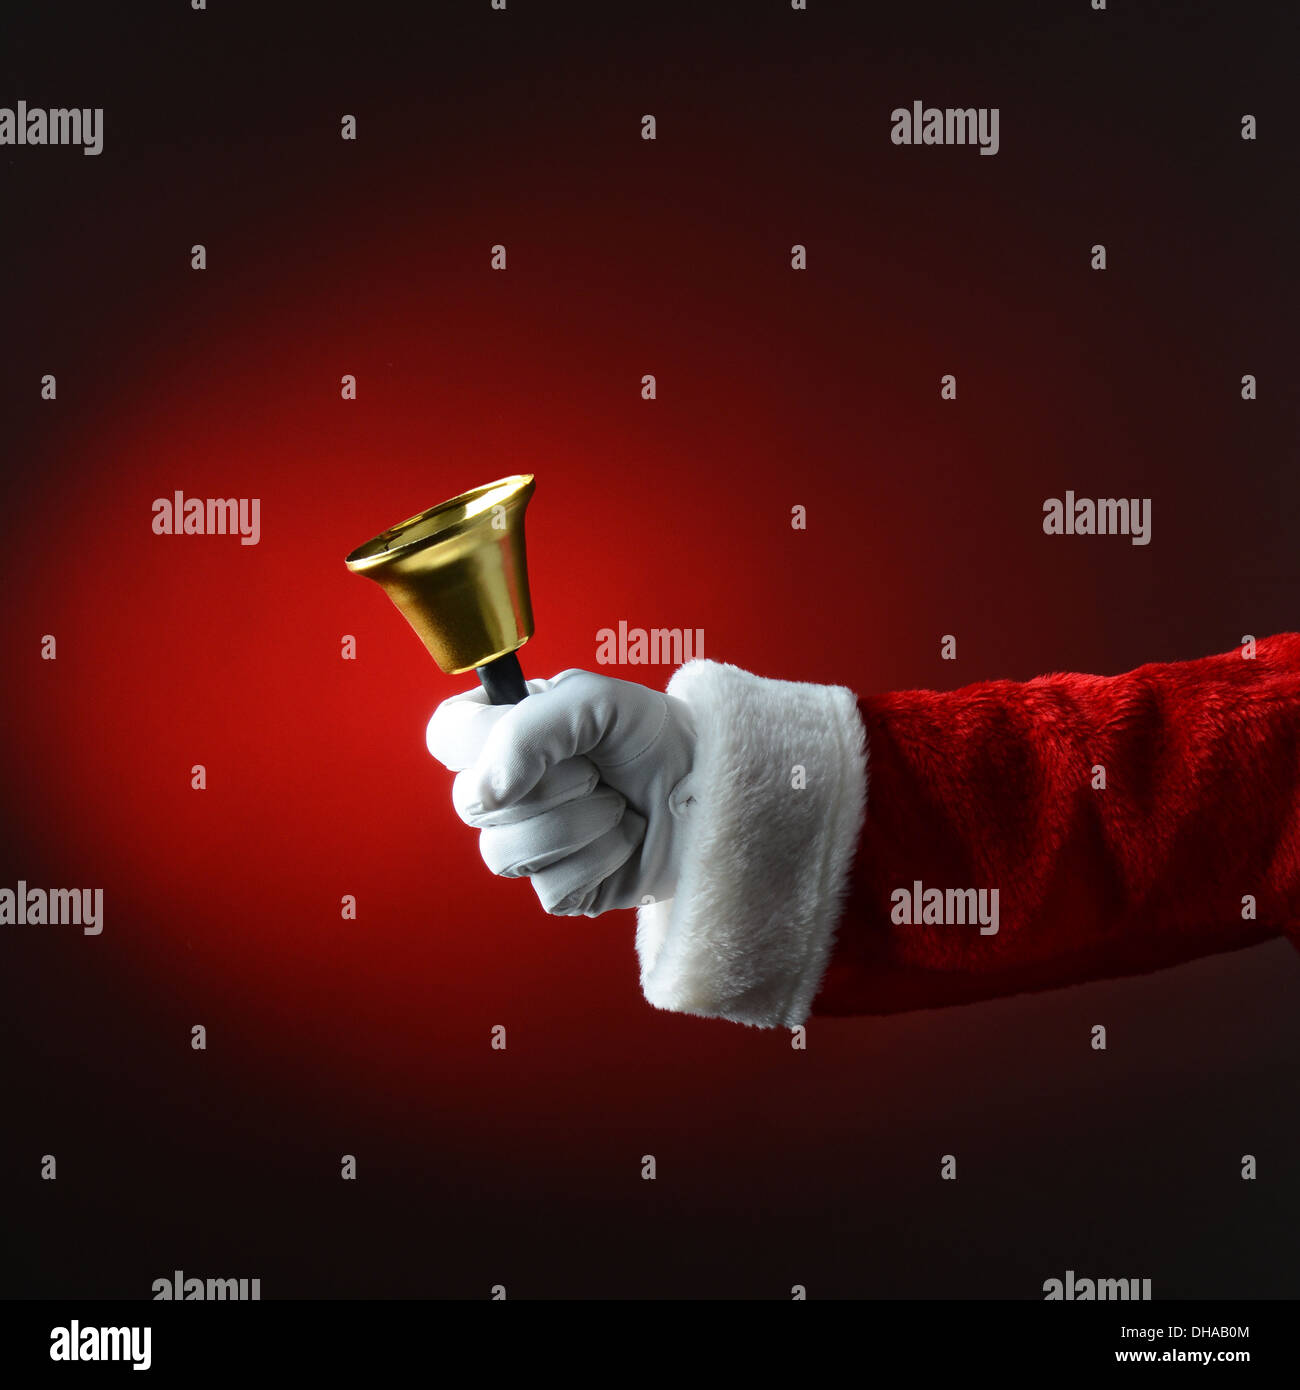 Santa Claus sonando una campana sobre fondo rojo oscuro. Formato cuadrado, sólo son visibles en la mano y el brazo. Foto de stock